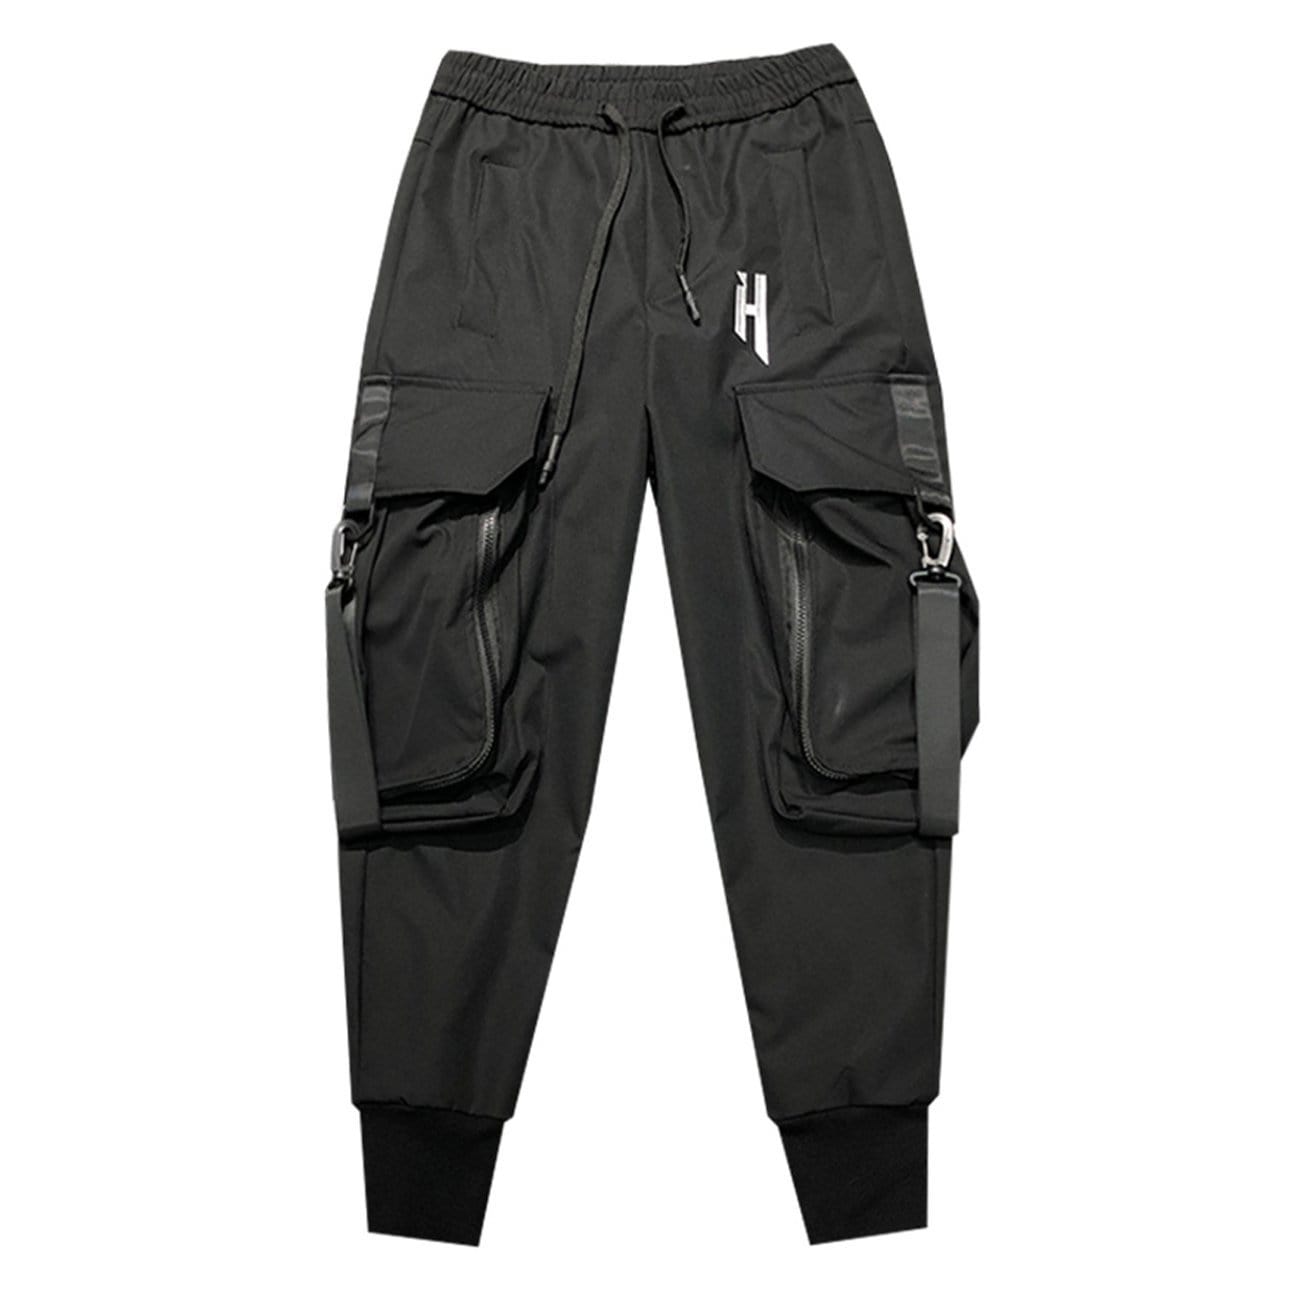 WLS Darkwear "Functional Pockets" Pants